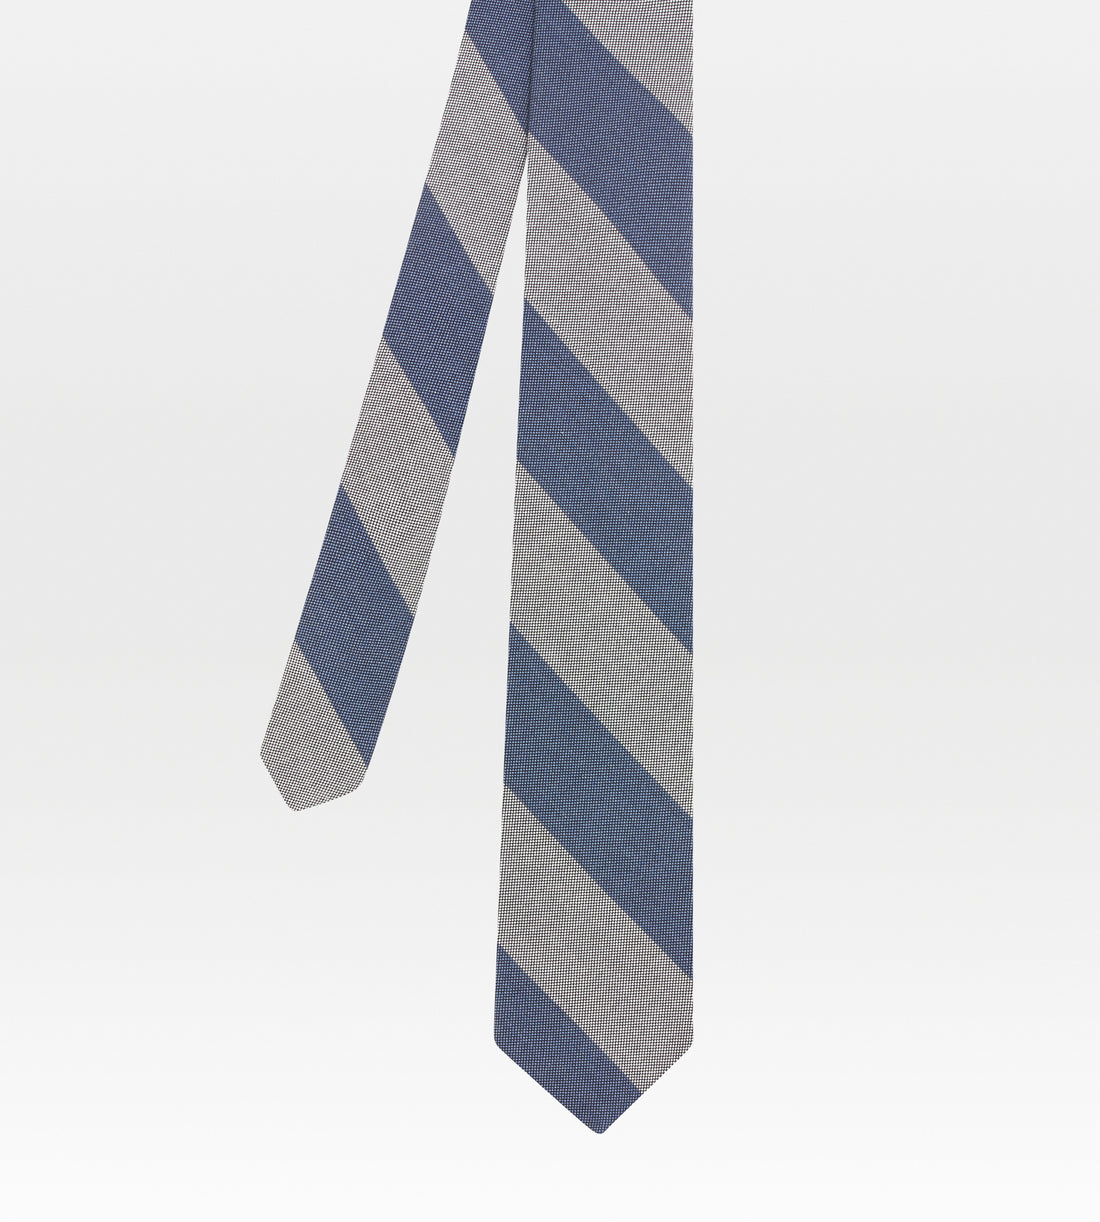 Cravates rayée grise et bleue